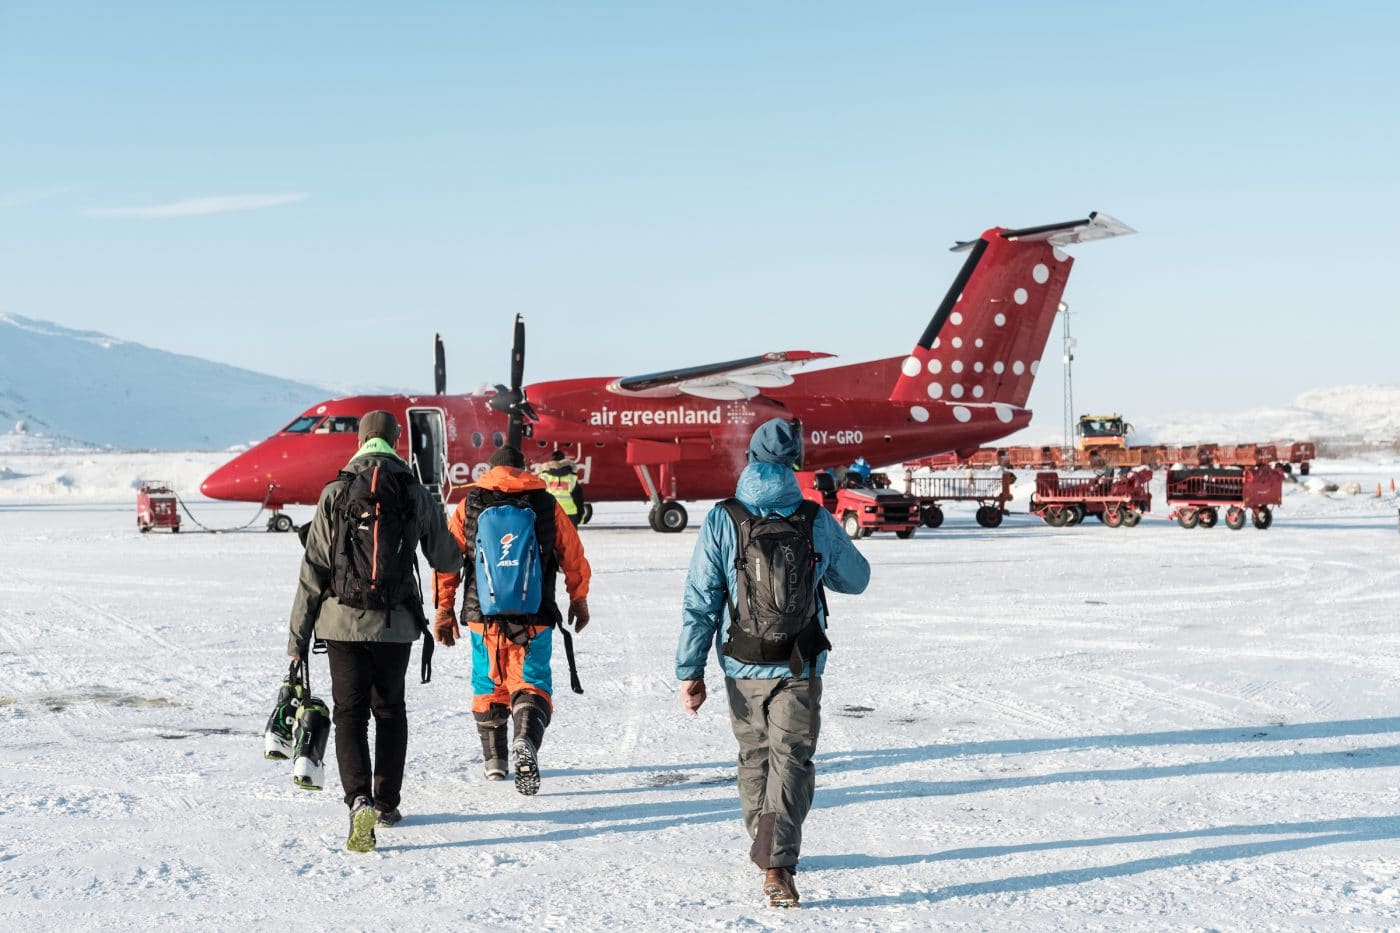 Boarding an Air Greenland flight at Kangerlussuaq International Airport. By Petter Cohen, Xtravel 2 / 4